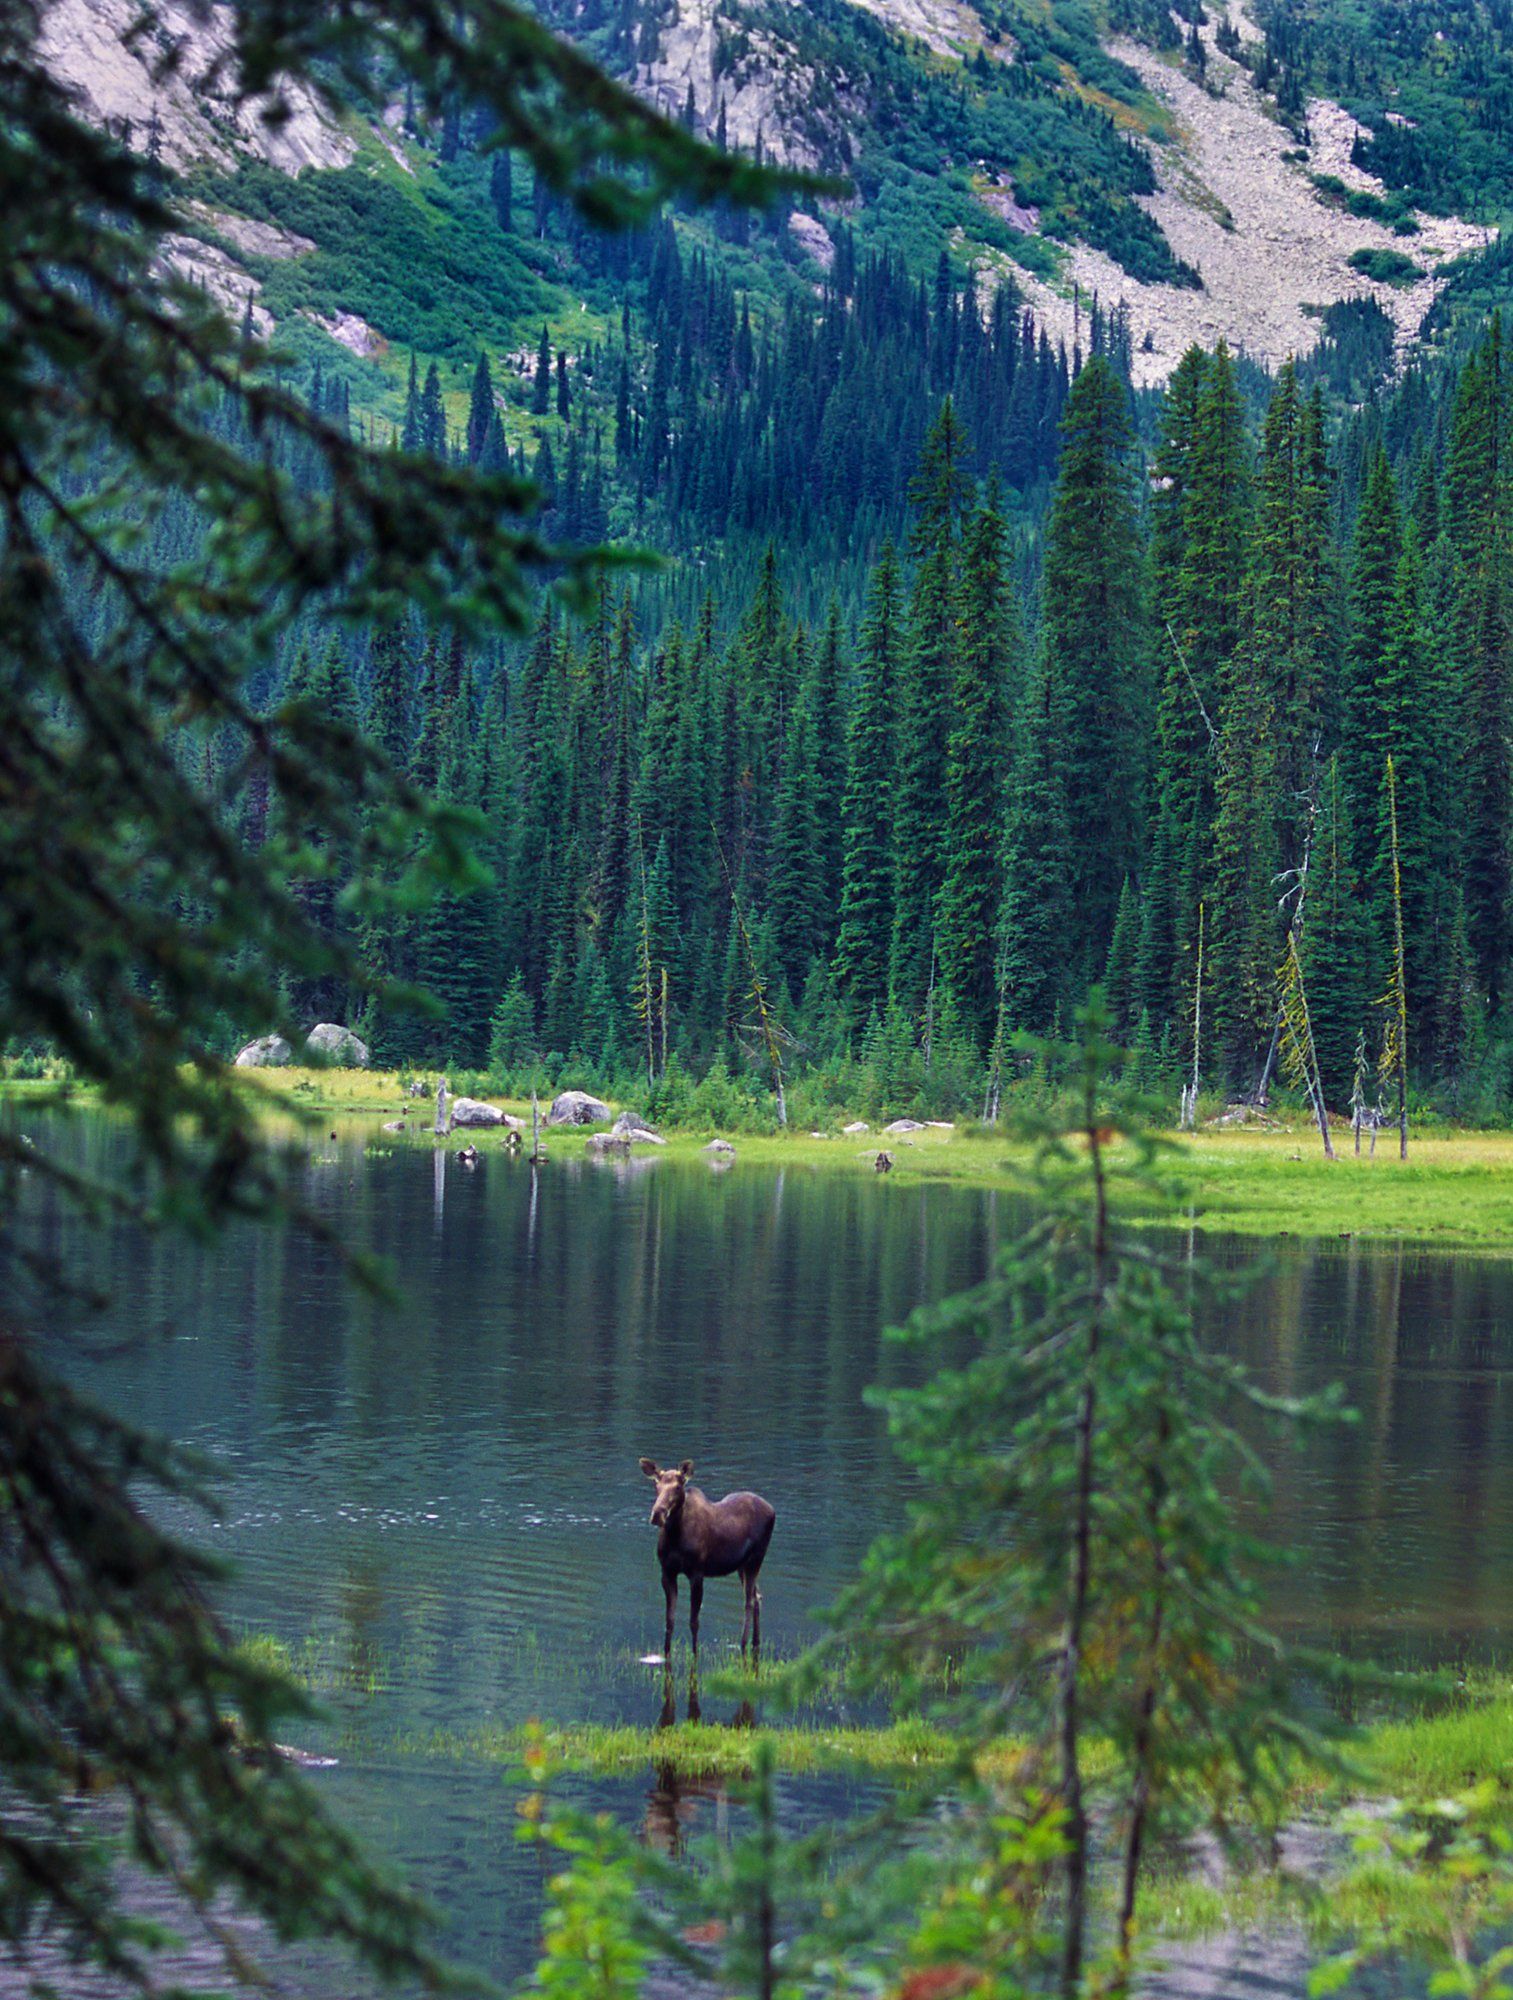 Moose, Gibson Lake, British Columbia